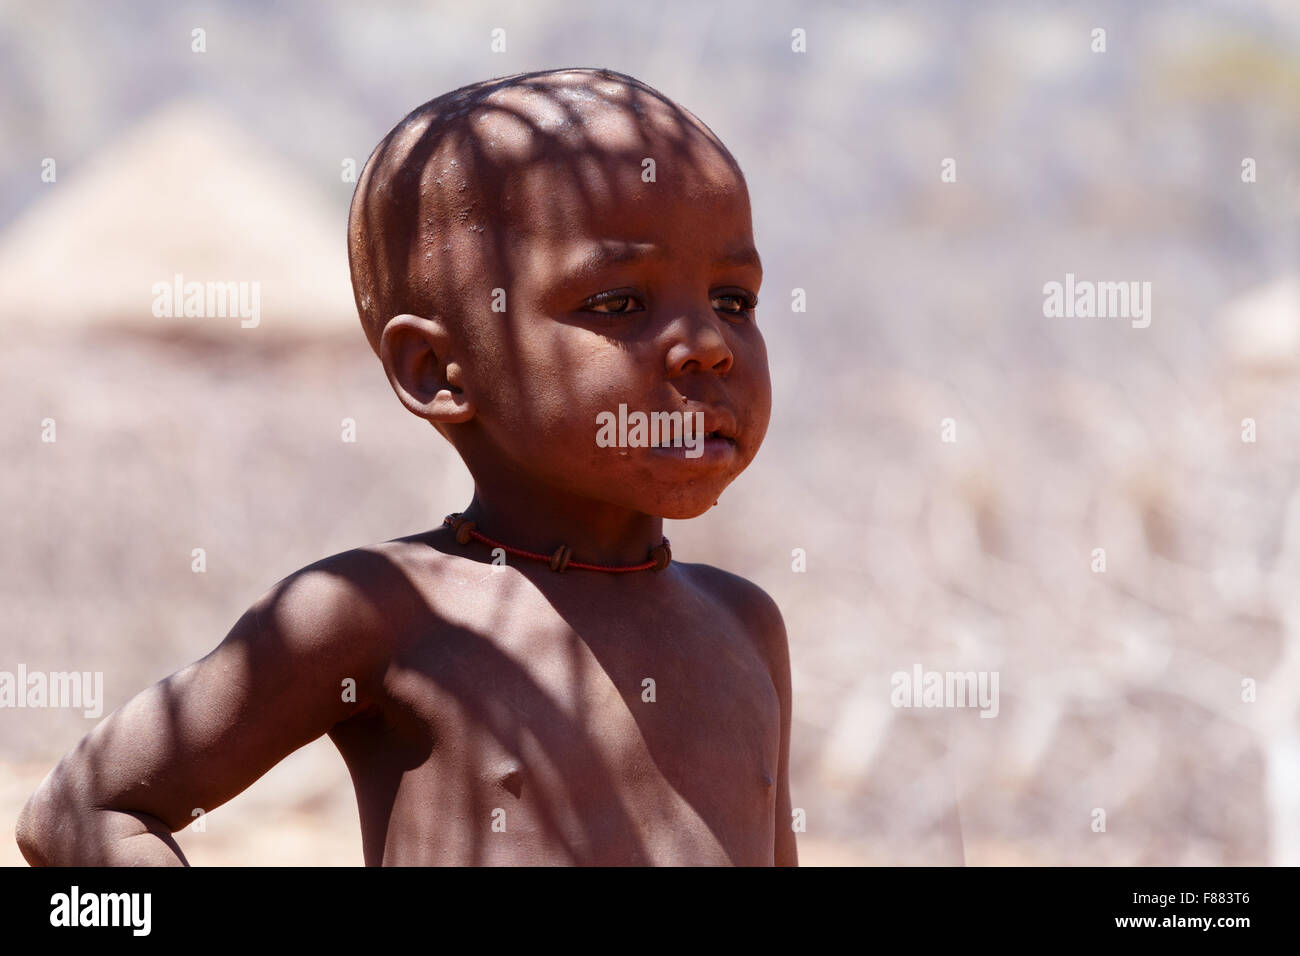 La Namibie, KAMANJAB, 10 octobre : enfant non identifié tribu Himba. Les himbas sont des peuples autochtones vivant dans le nord de la Namibie, en t Banque D'Images